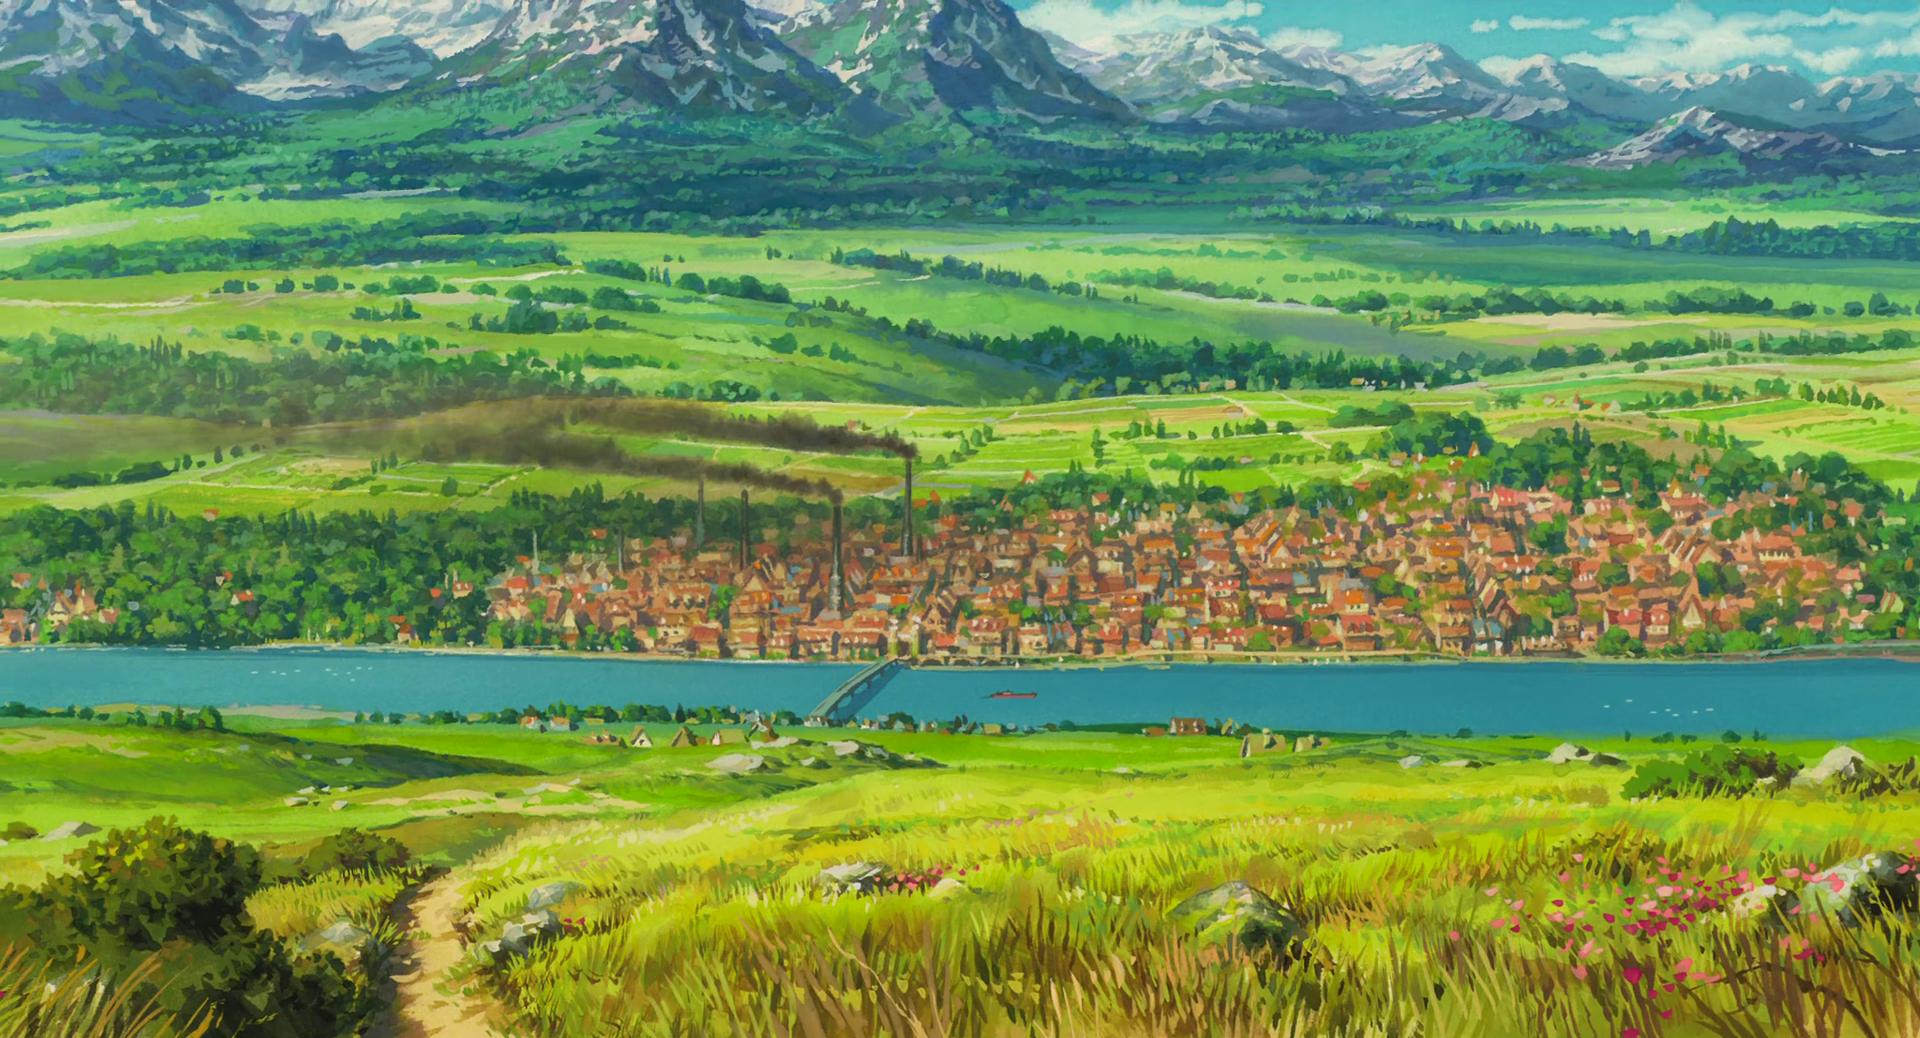 Studio Ghibli Background